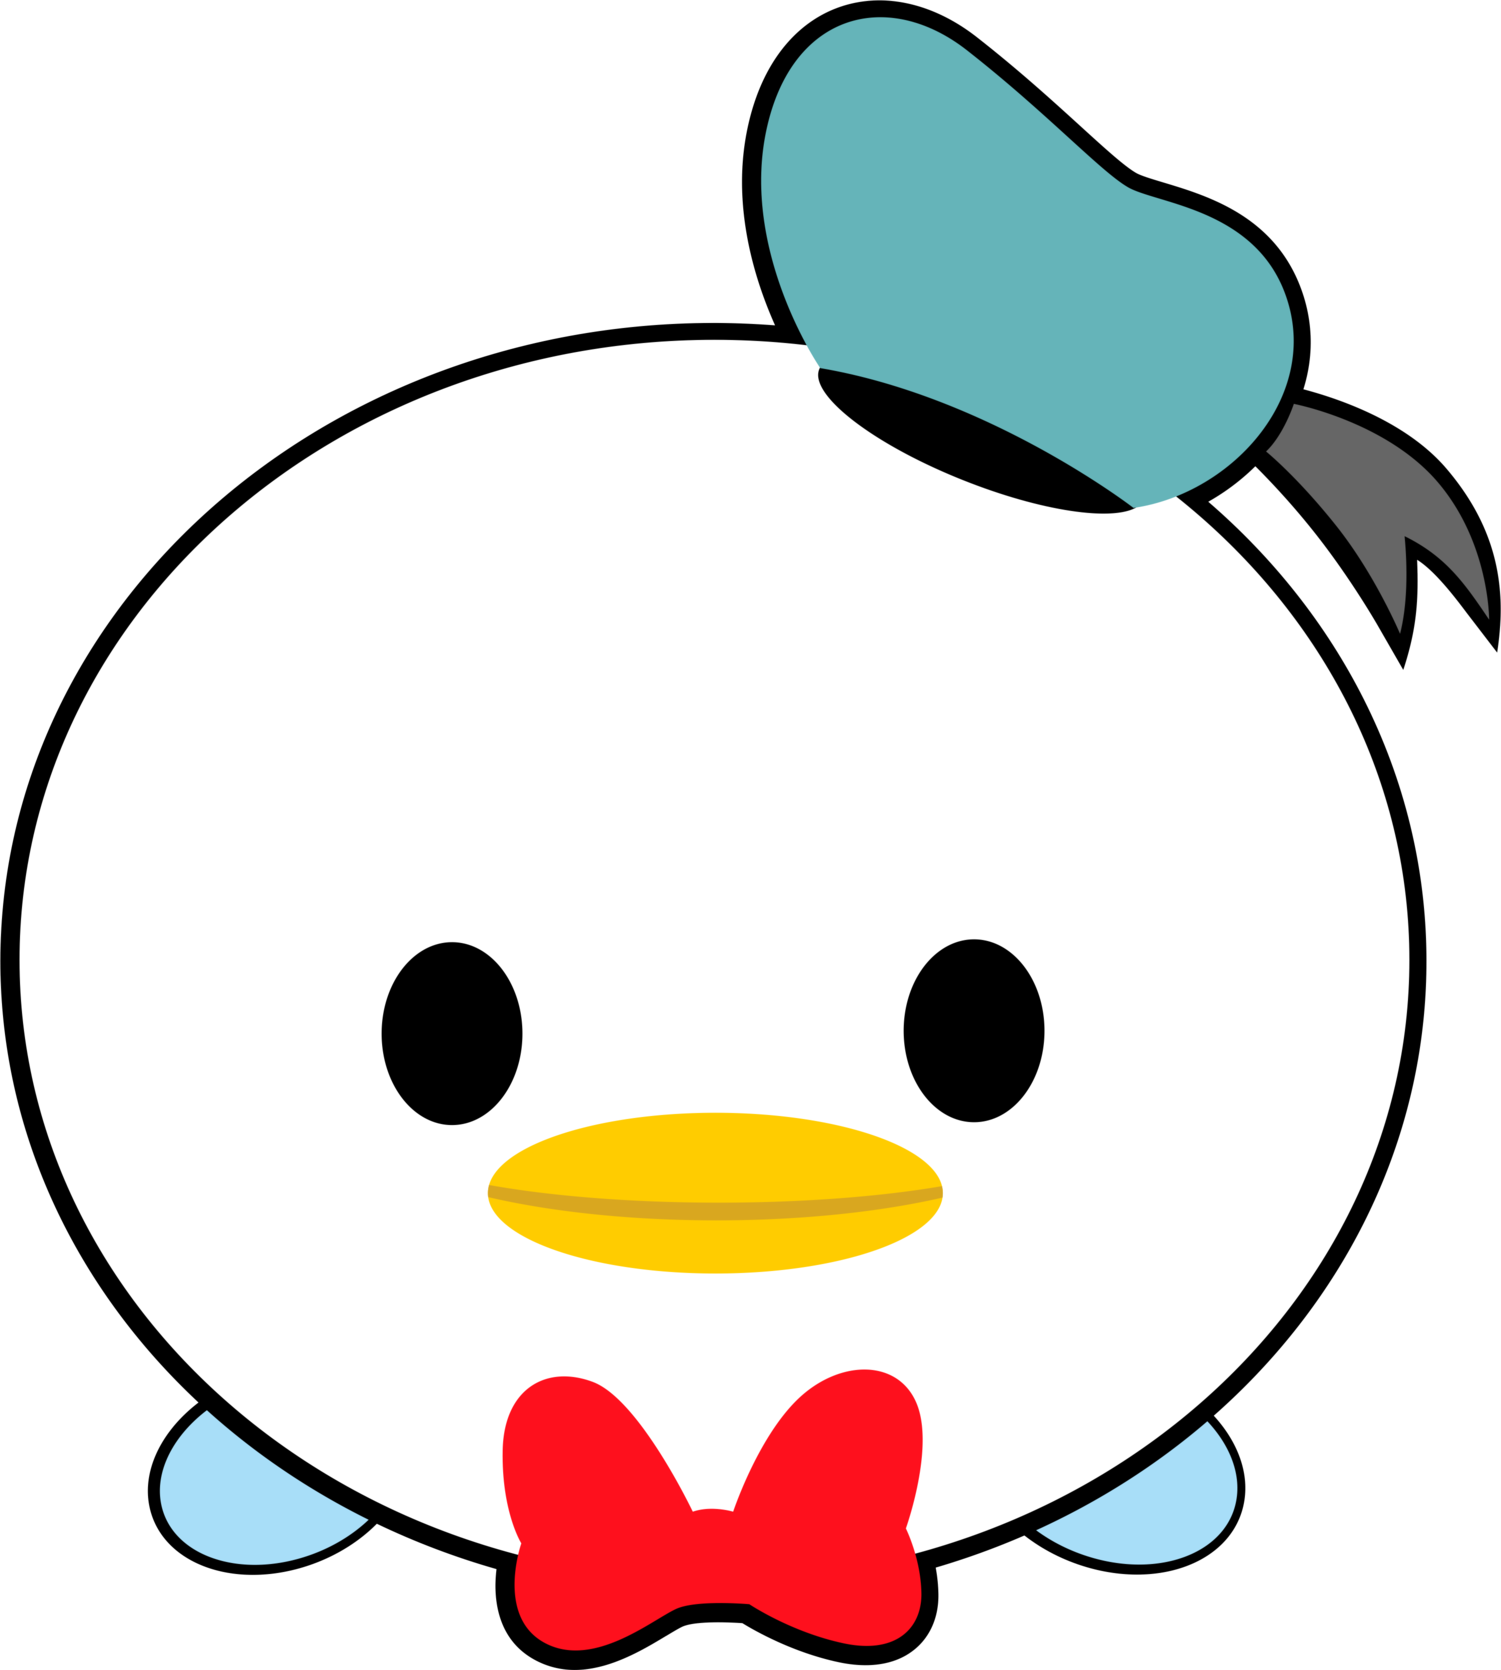 Disney tsum donald . Clipart duck cartoon duck